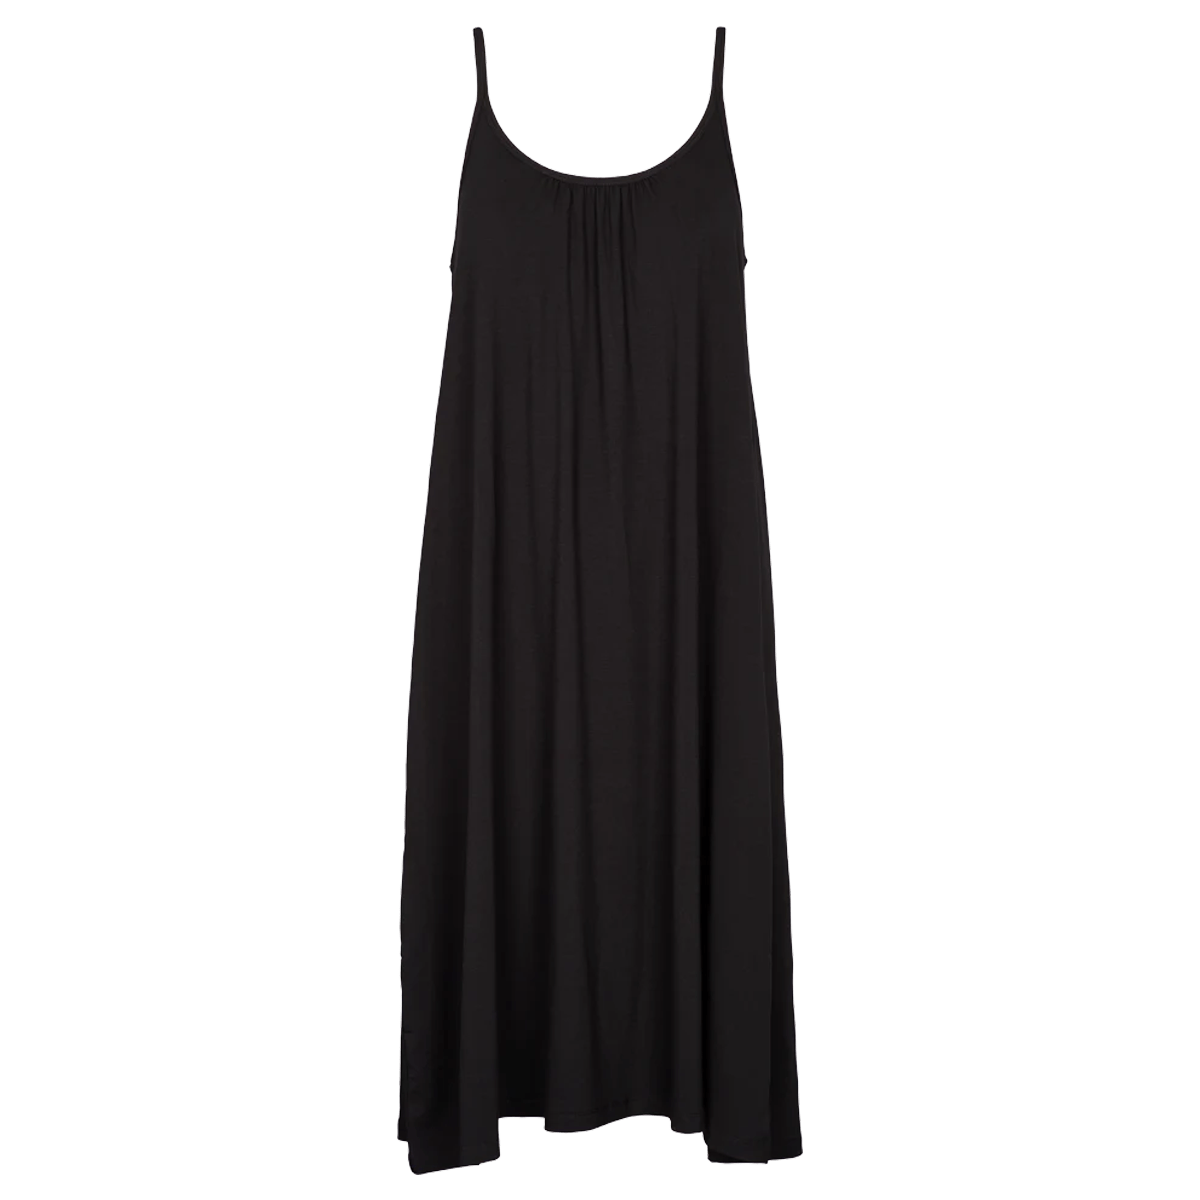 Basic Apparel - Jo Strap Dress - Black - Welive